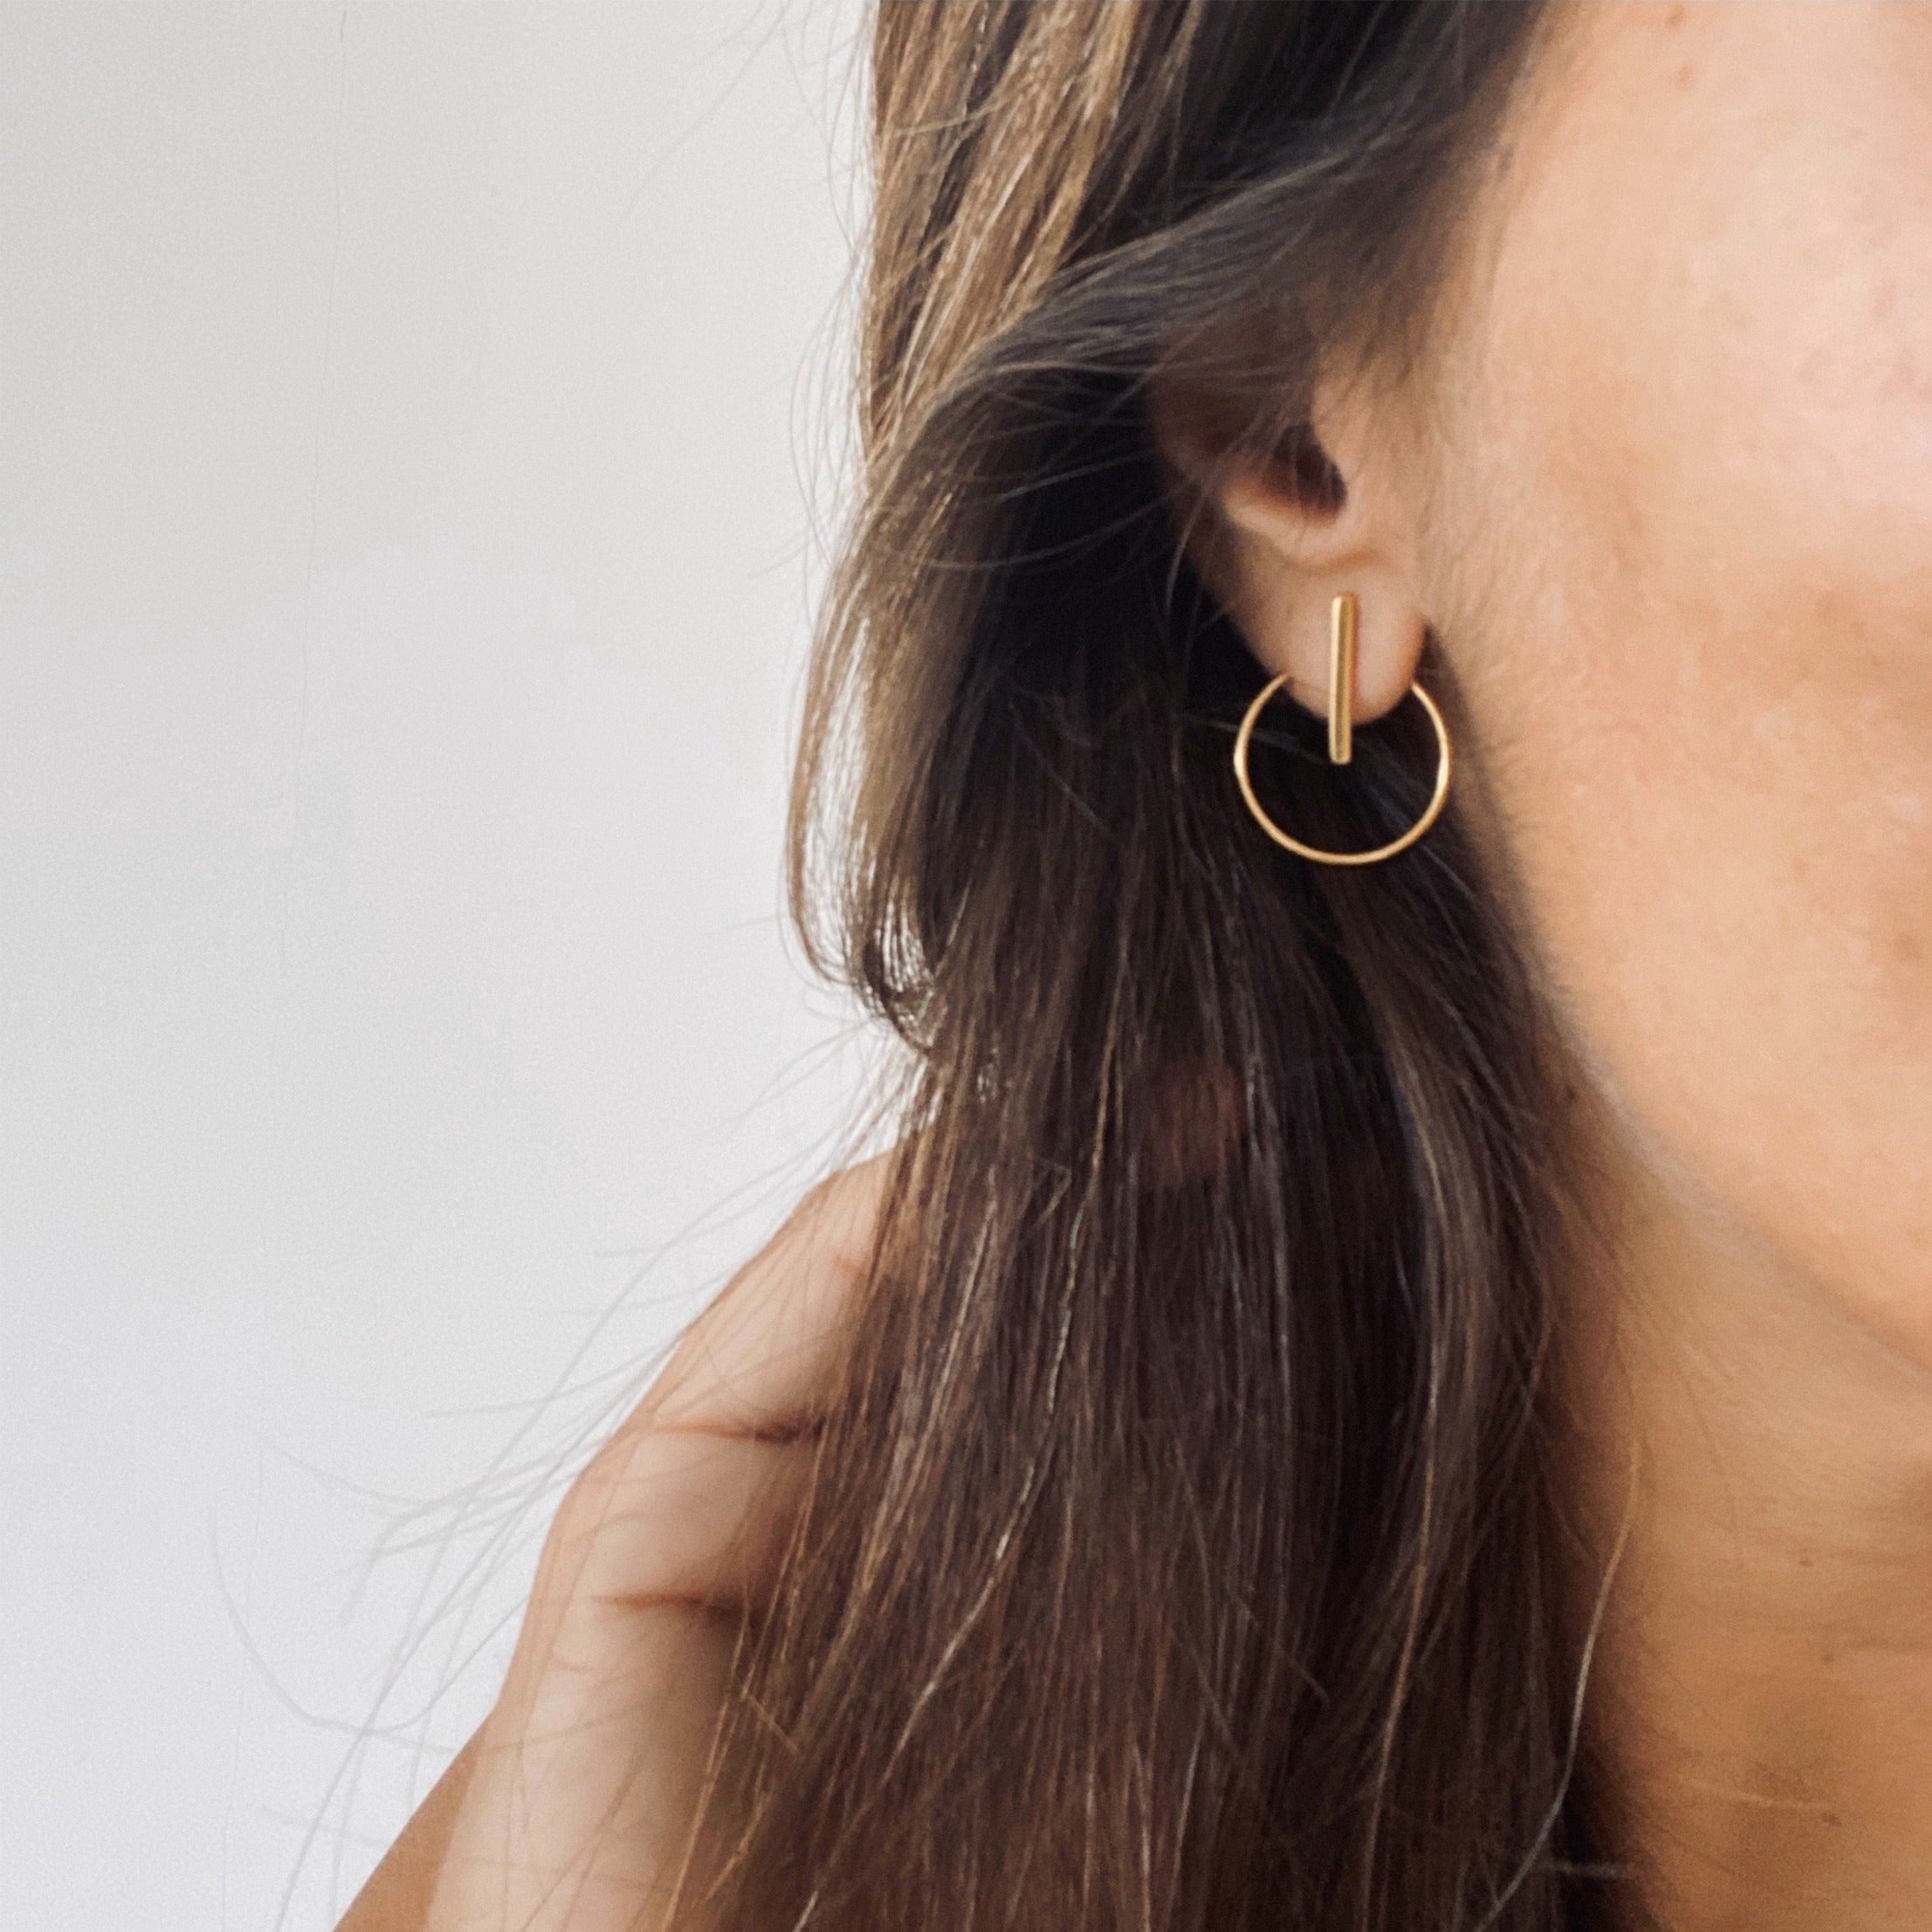 REA Ohrring | Earring Gold